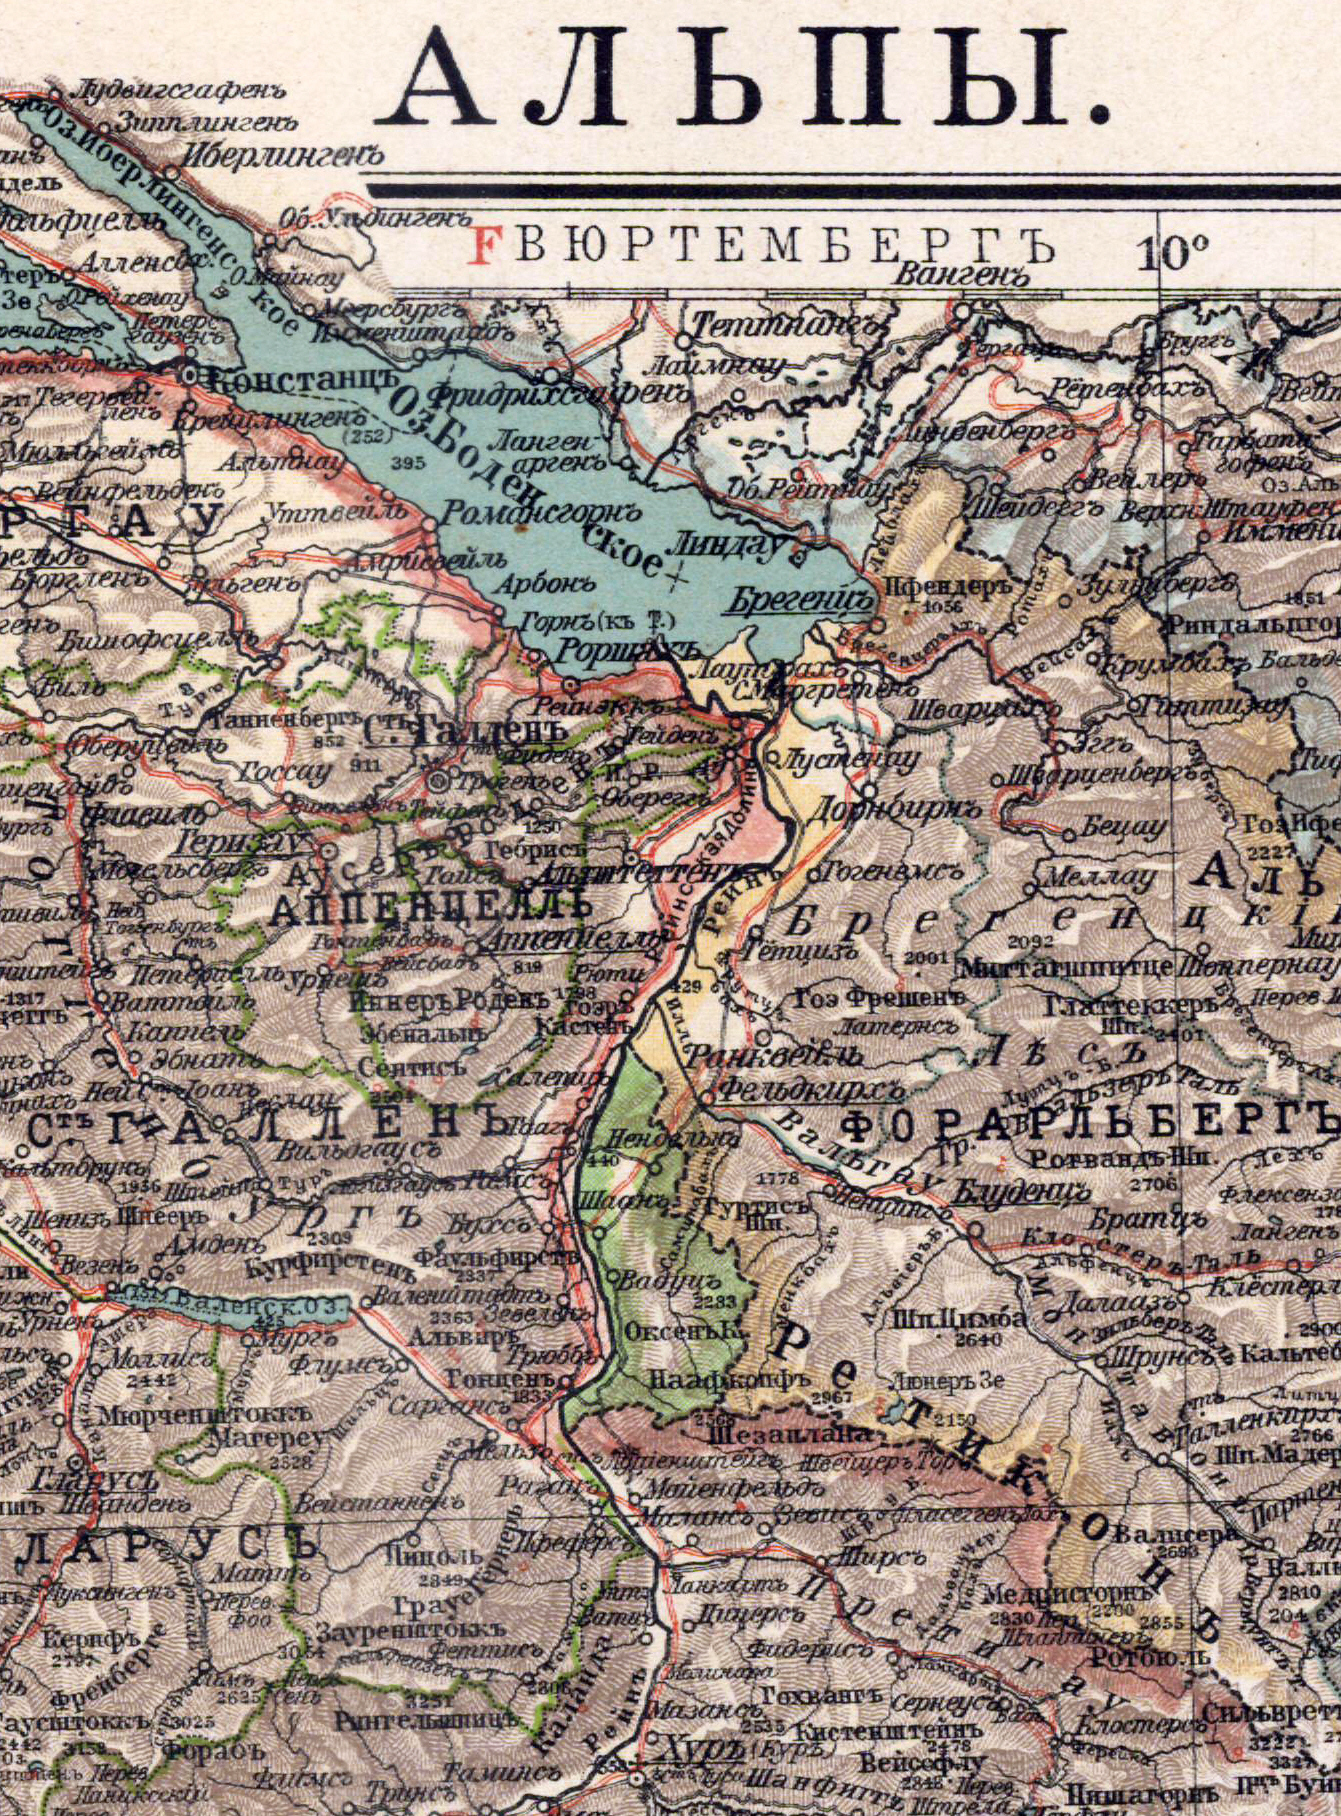 Fürstentum Liechtenstein (Лихтенштейн), 1903